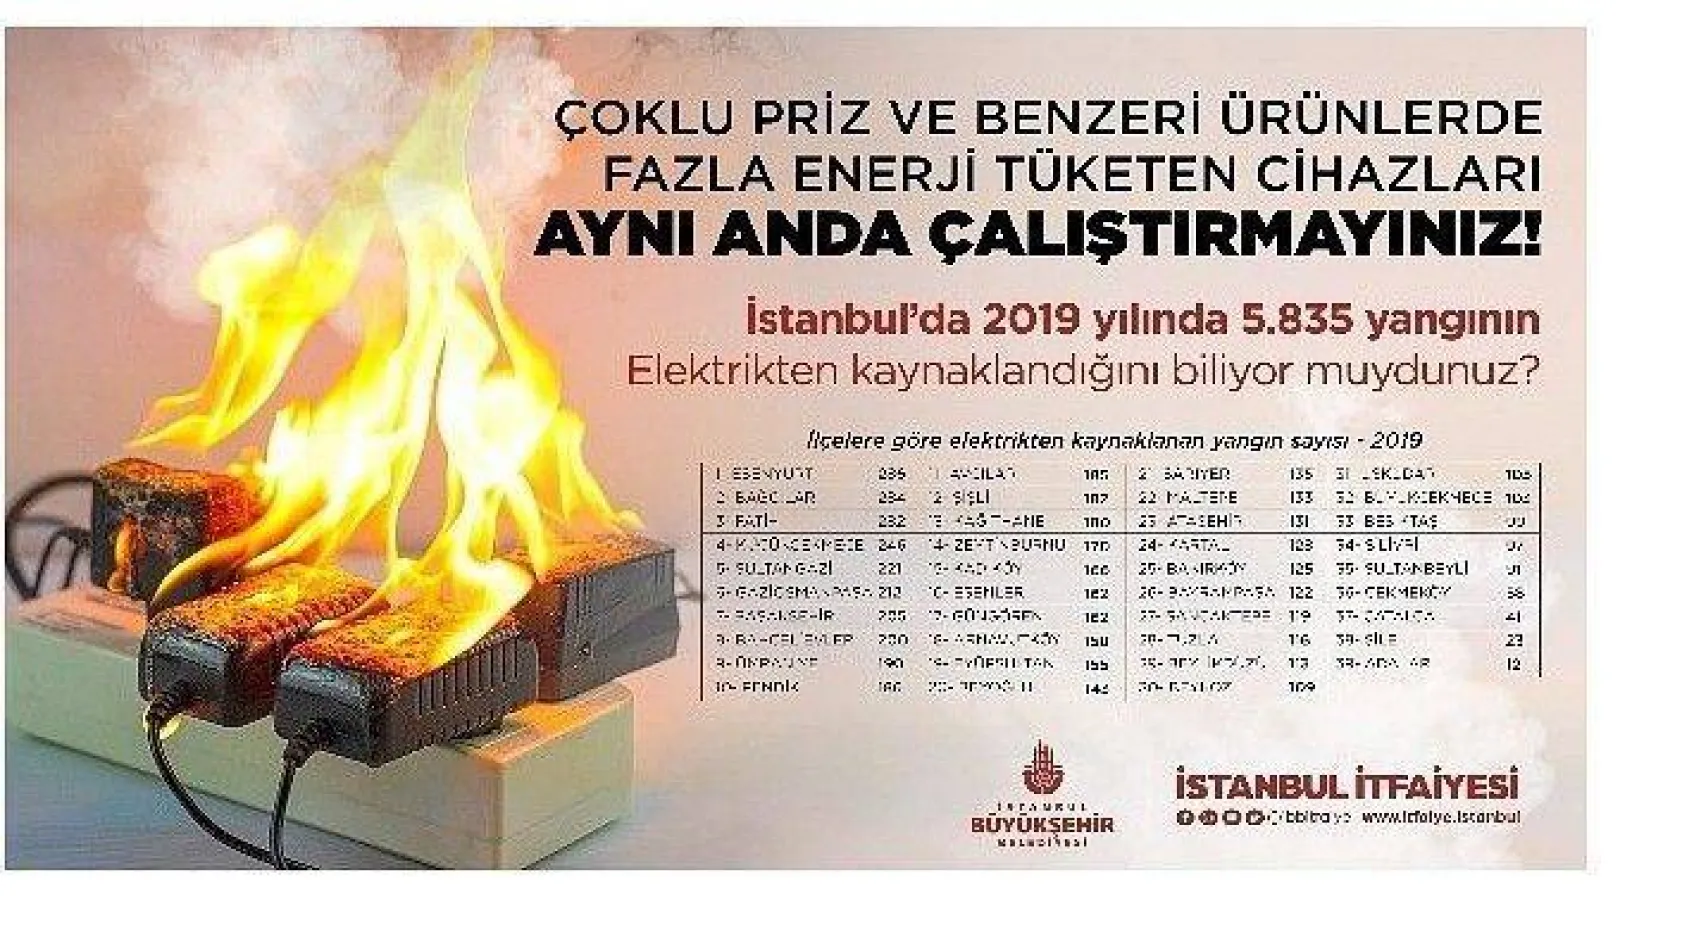 İstanbul'da 5 bin 835 yangın elektrikten kaynaklandı